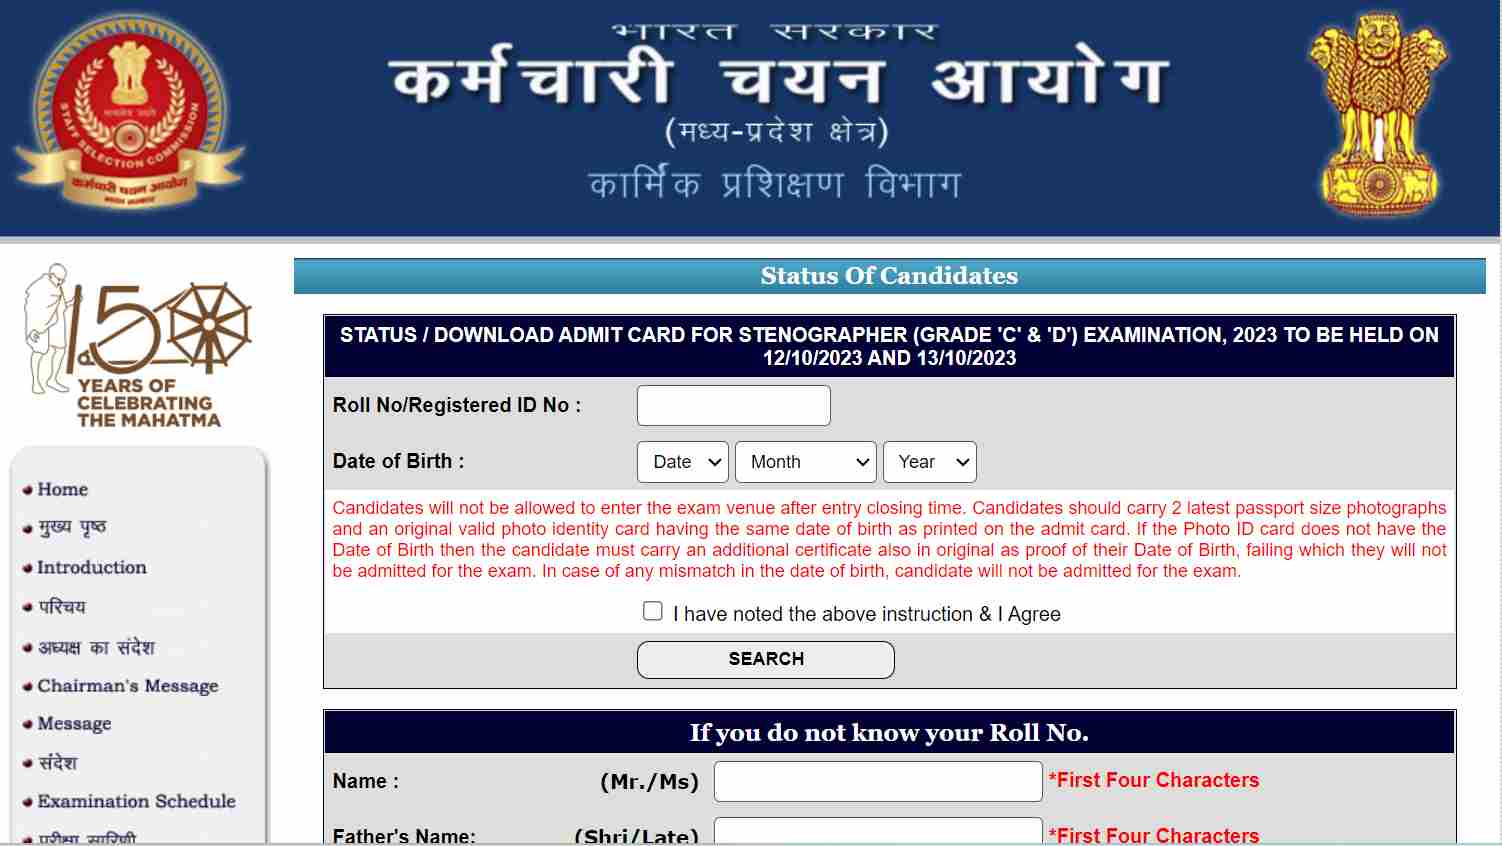 एसएससी स्टेनोग्राफर प्रवेशपत्र 2023 हिंदीमध्ये जारी: एसएससी स्टेनो परीक्षा 12 आणि 13 ऑक्टोबर, 2023 को होणार आहे.